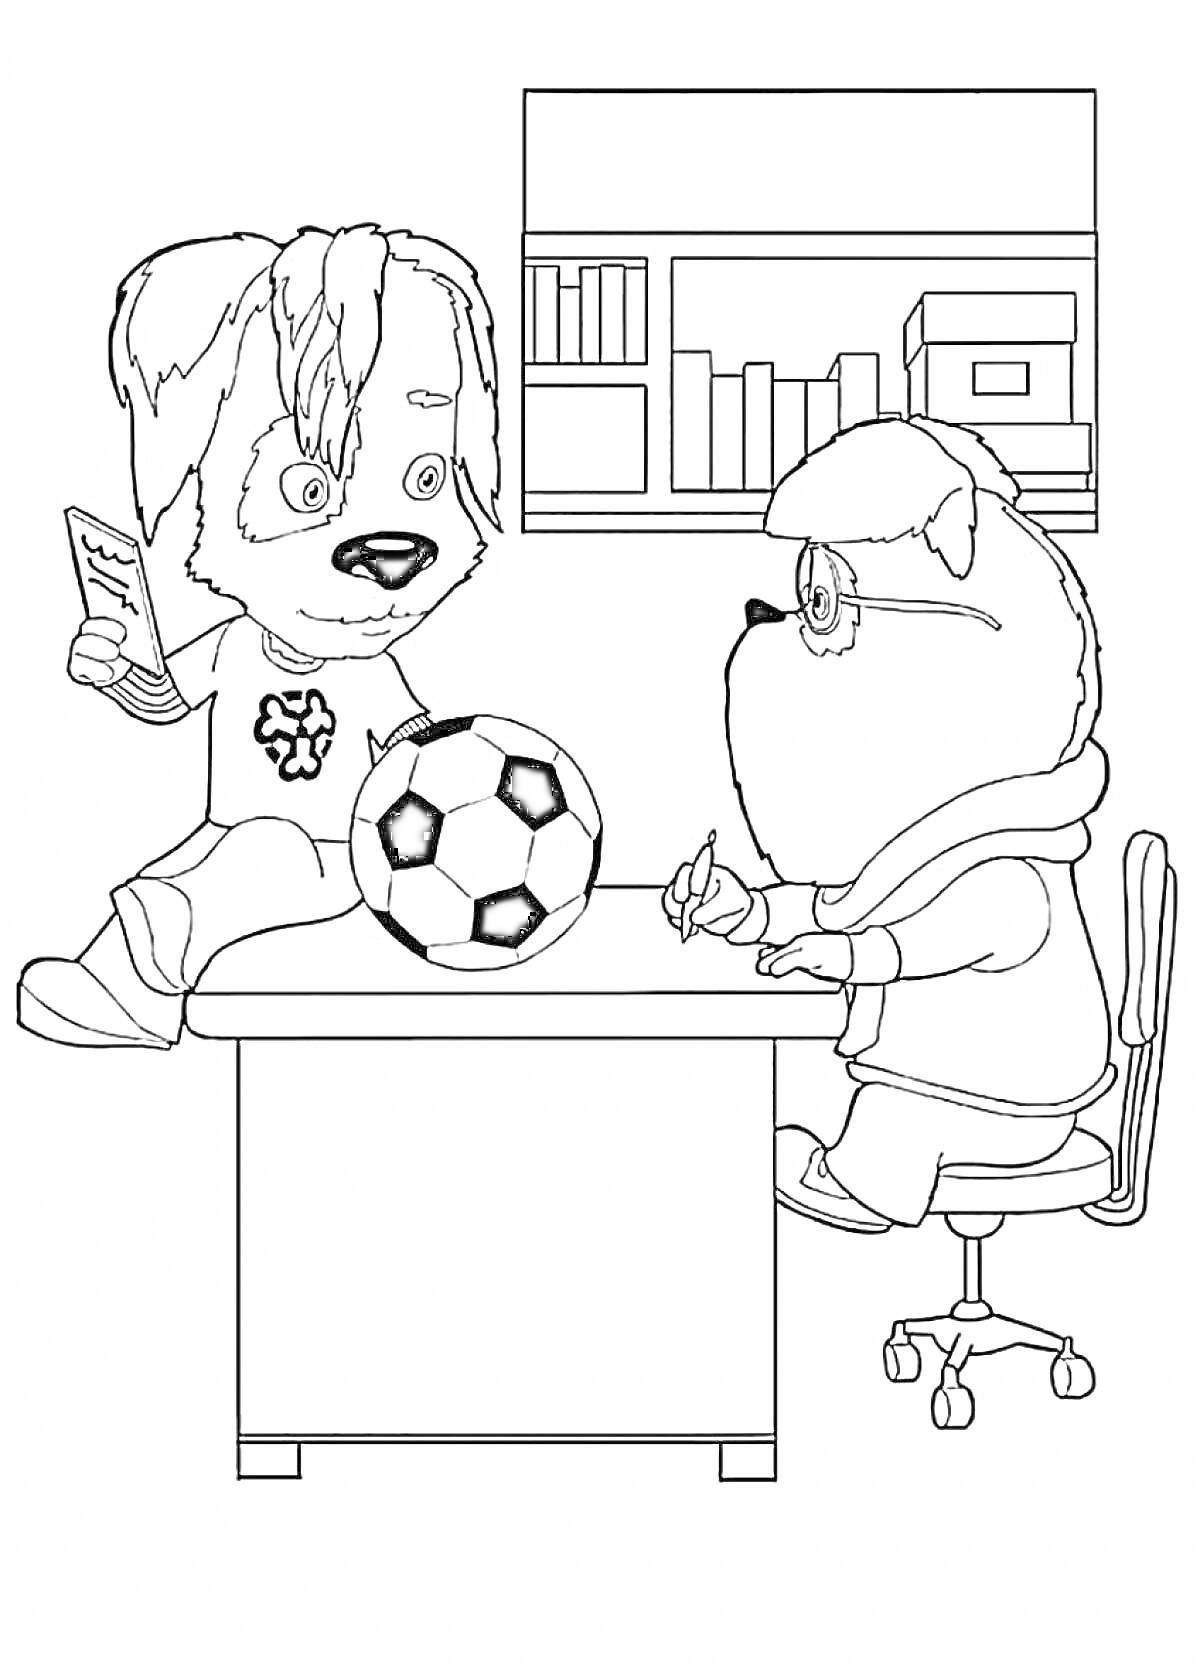 Два персонажа барбоскины в кабинете с мячом и книгой на столе